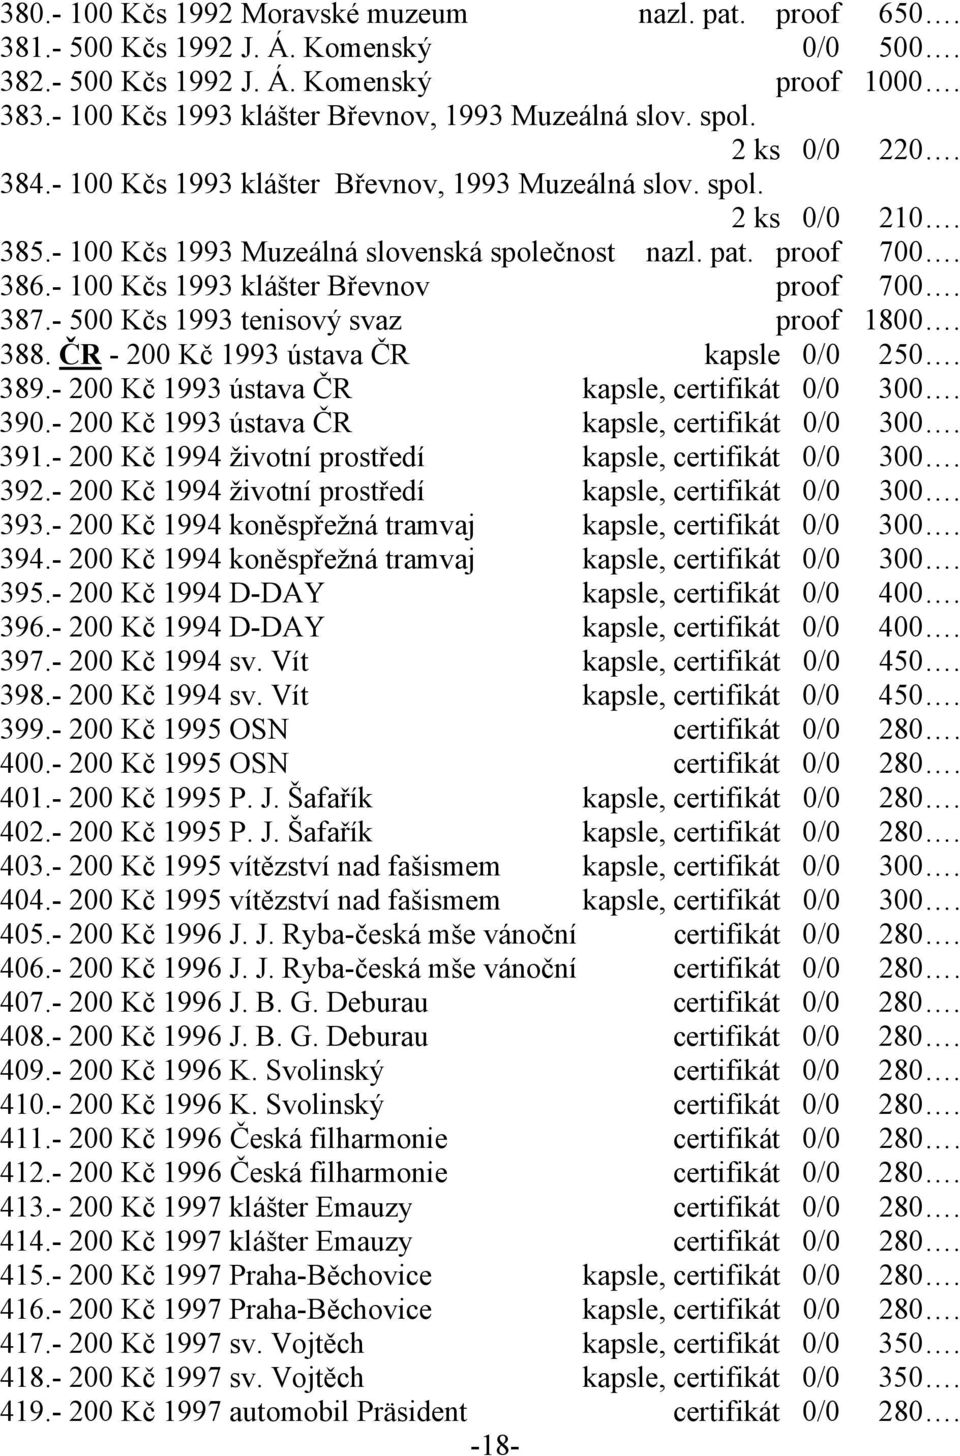 - 100 Kčs 1993 Muzeálná slovenská společnost nazl. pat. proof 700. 386.- 100 Kčs 1993 klášter Břevnov proof 700. 387.- 500 Kčs 1993 tenisový svaz proof 1800. 388.